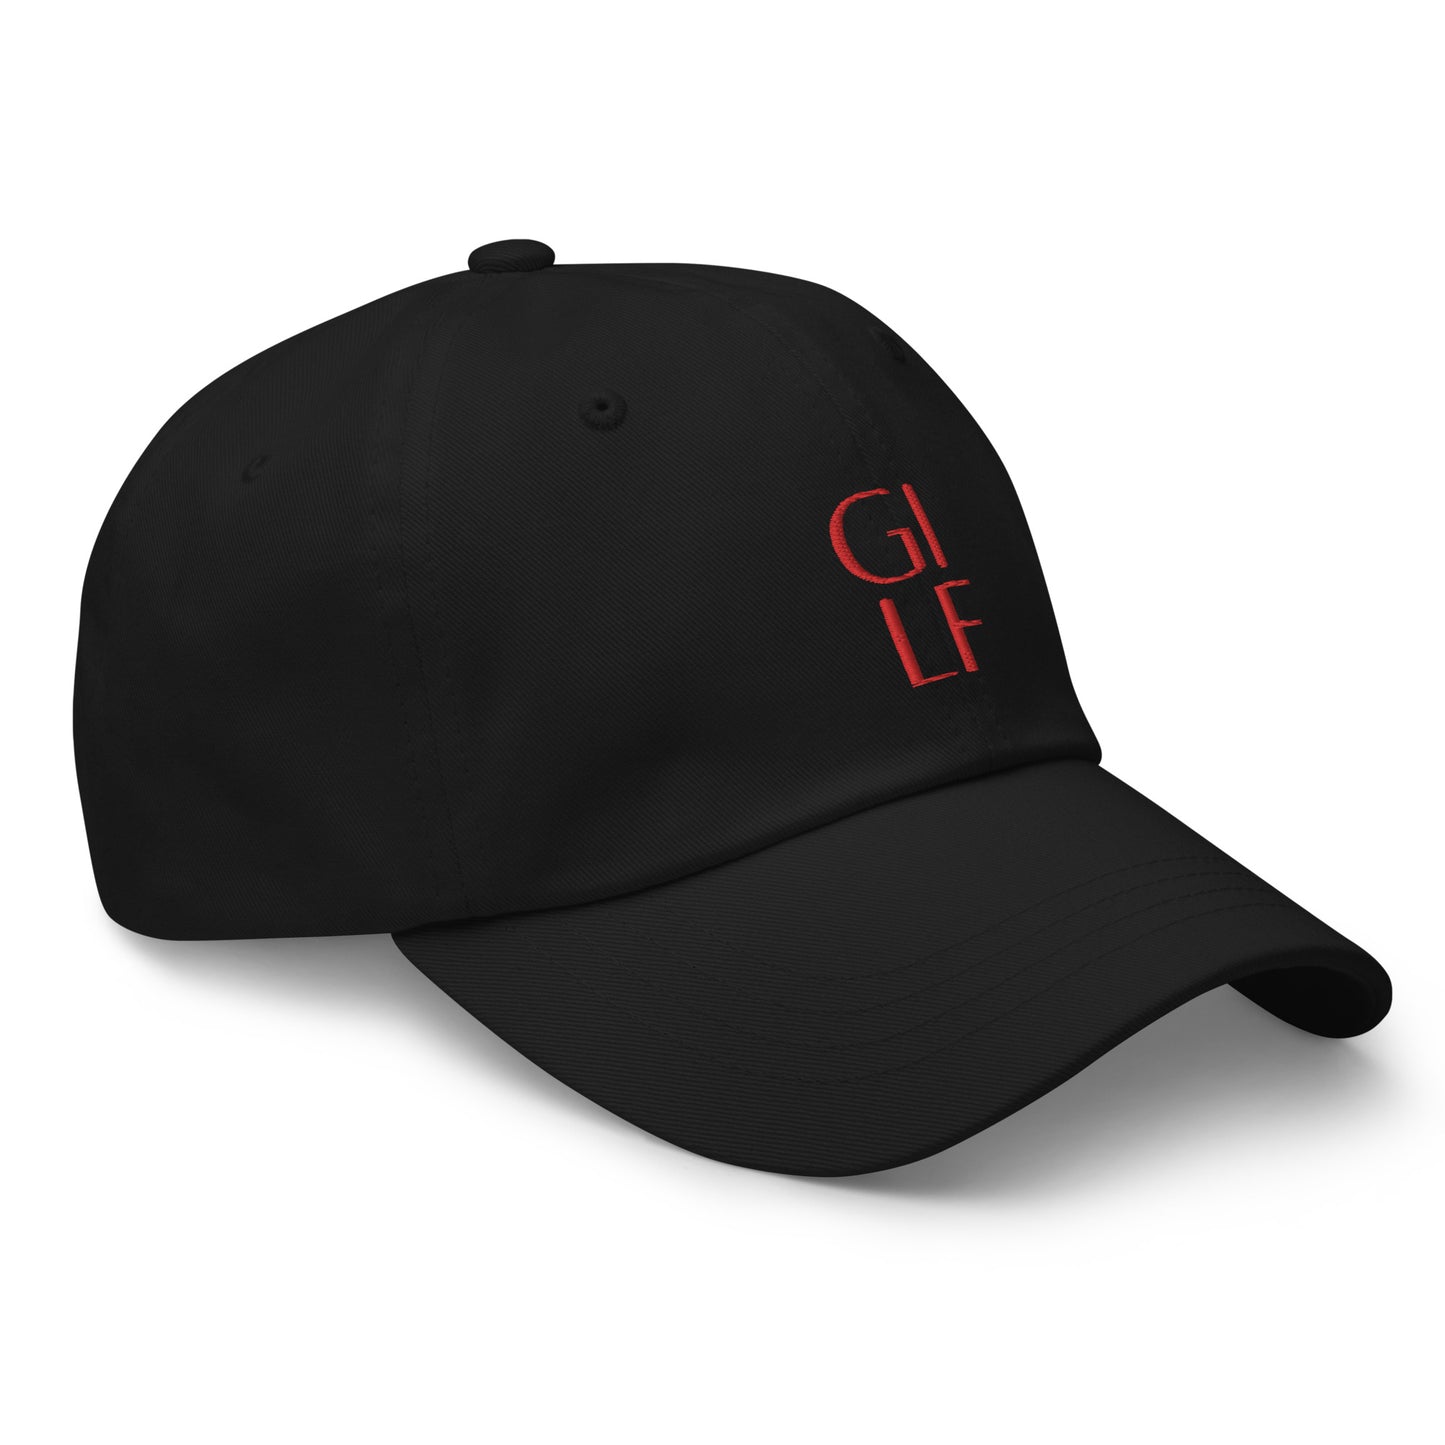 GILF Hat